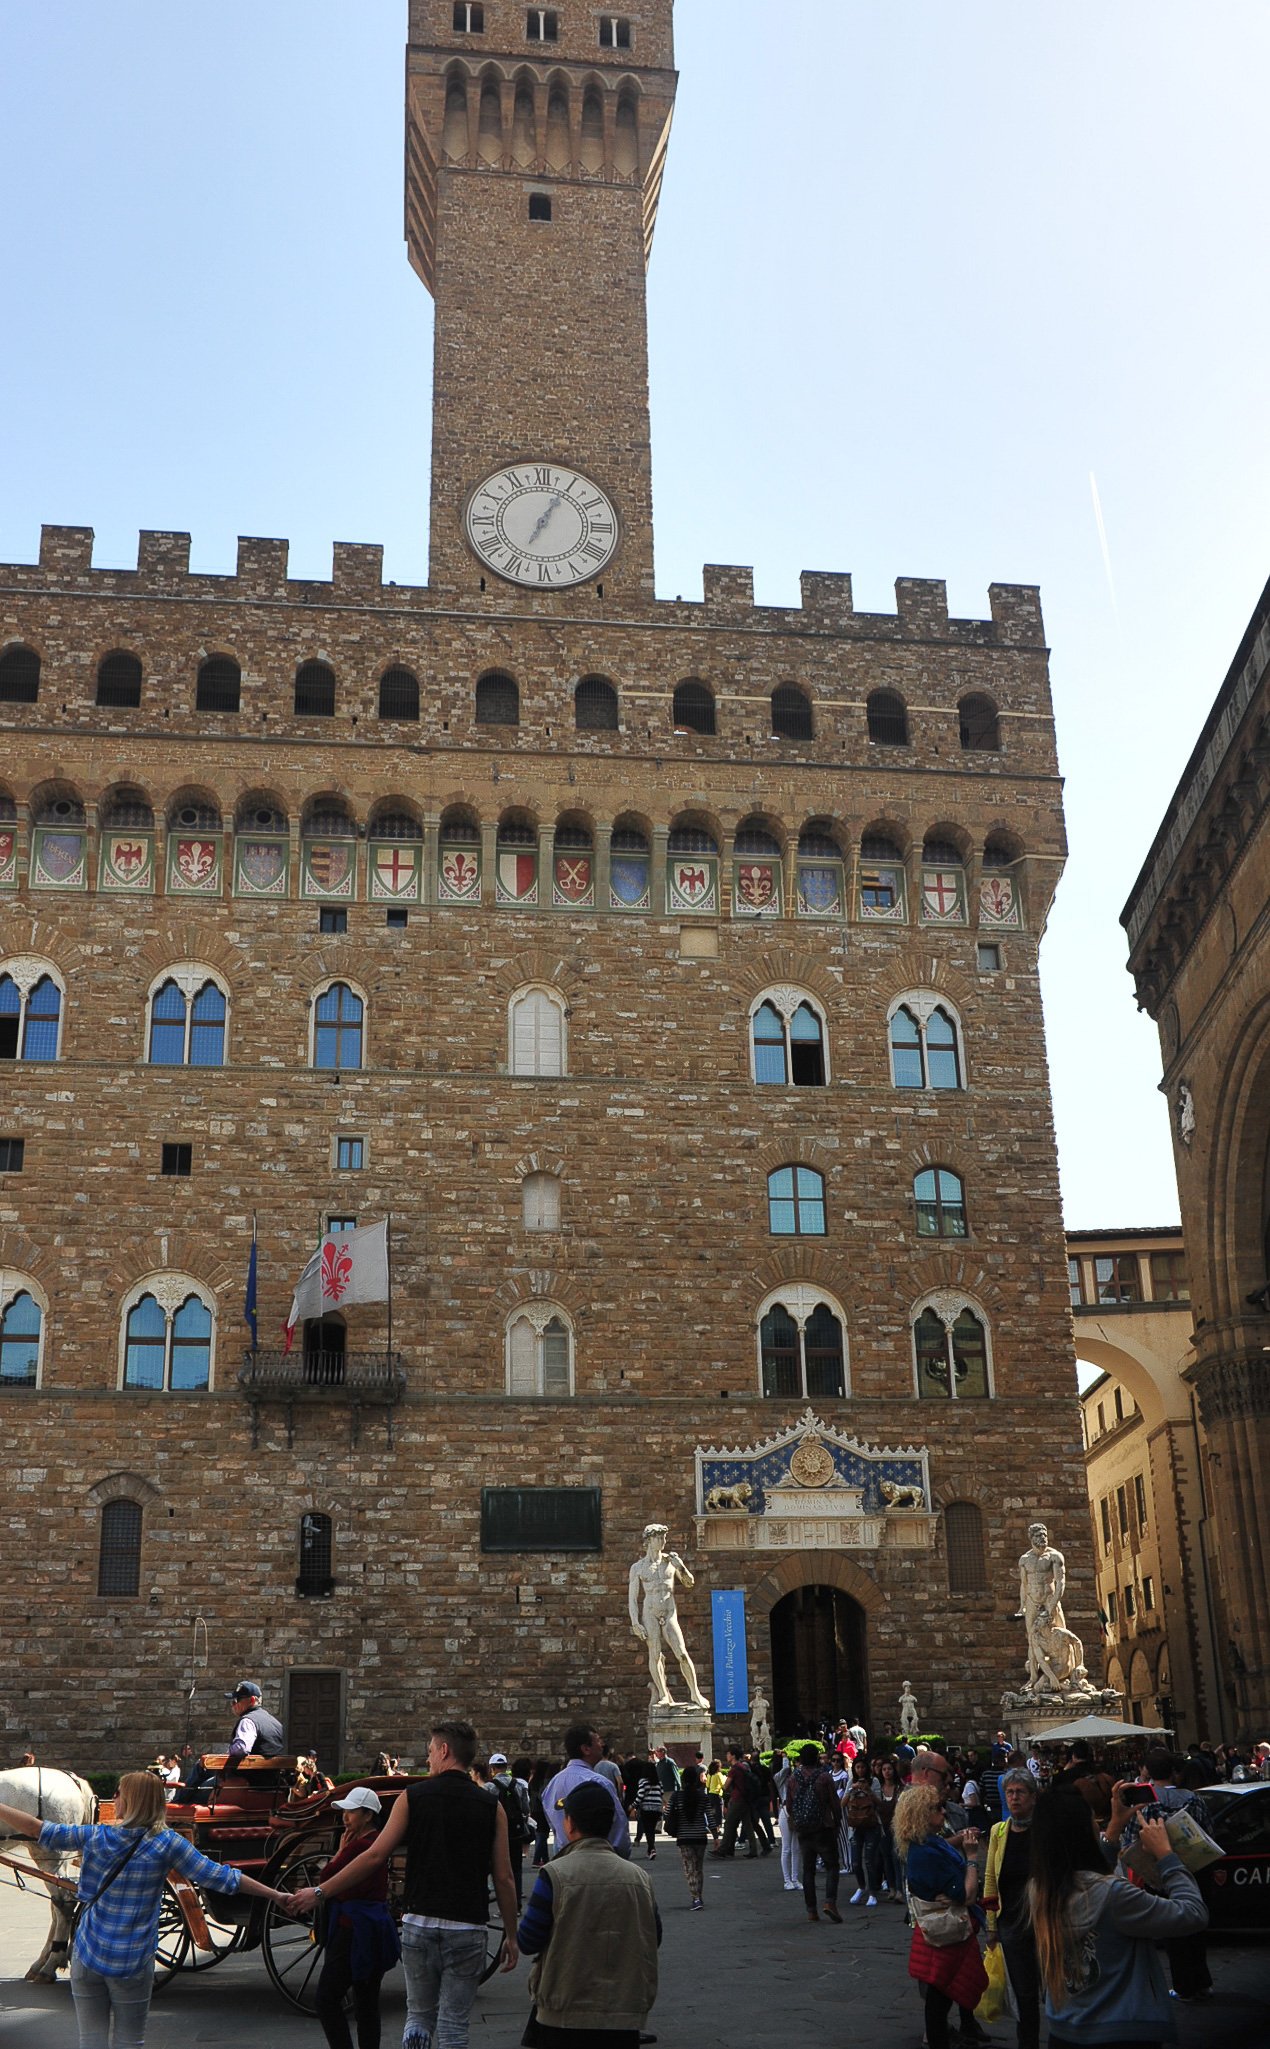 Palazzo Vecchio, home of the Medici family